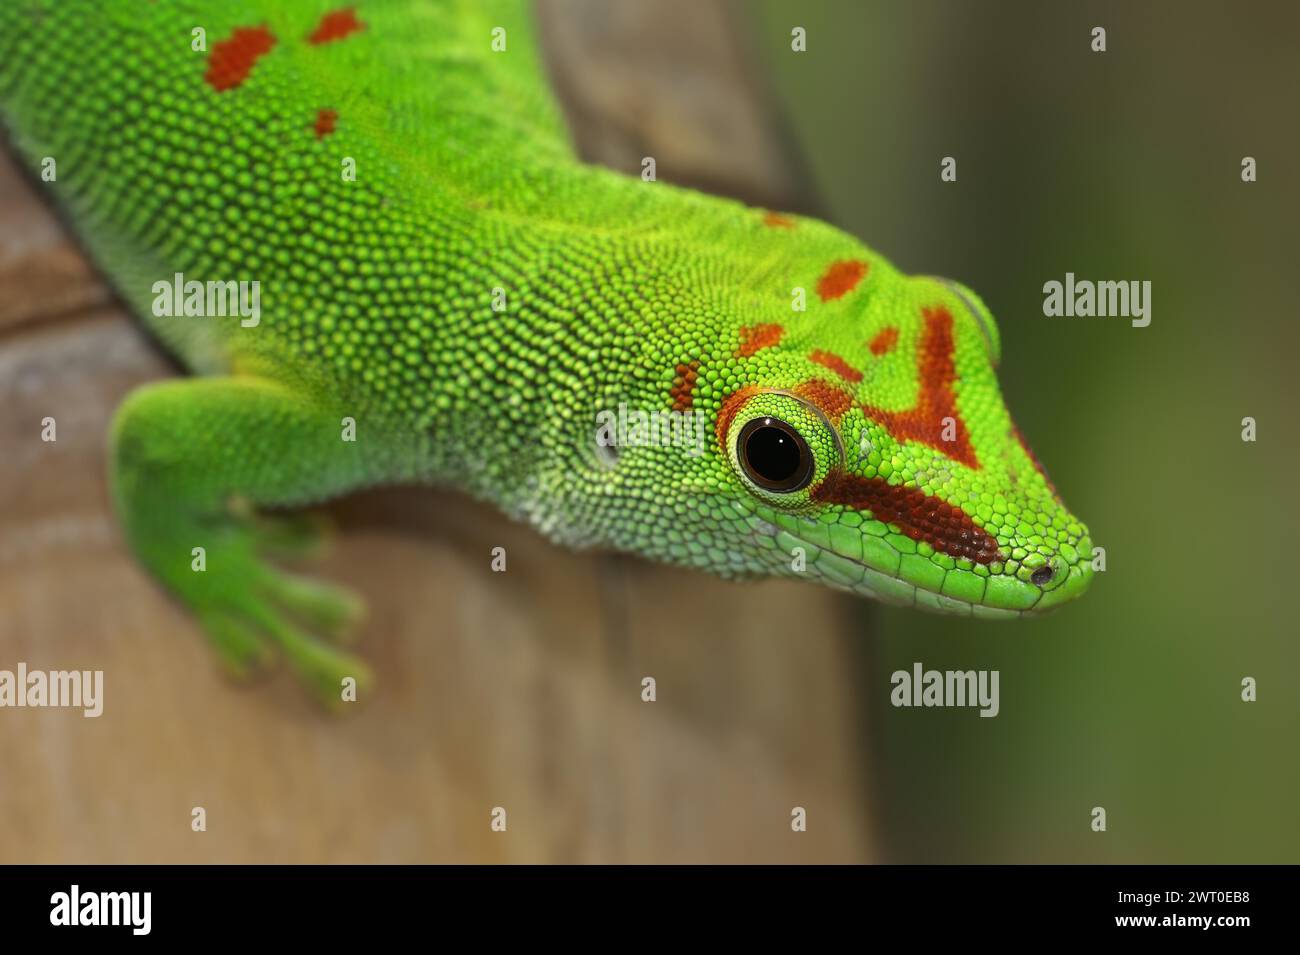 Madagascar giant day gecko (Phelsuma grandis), captive, native to Madagascar Stock Photo